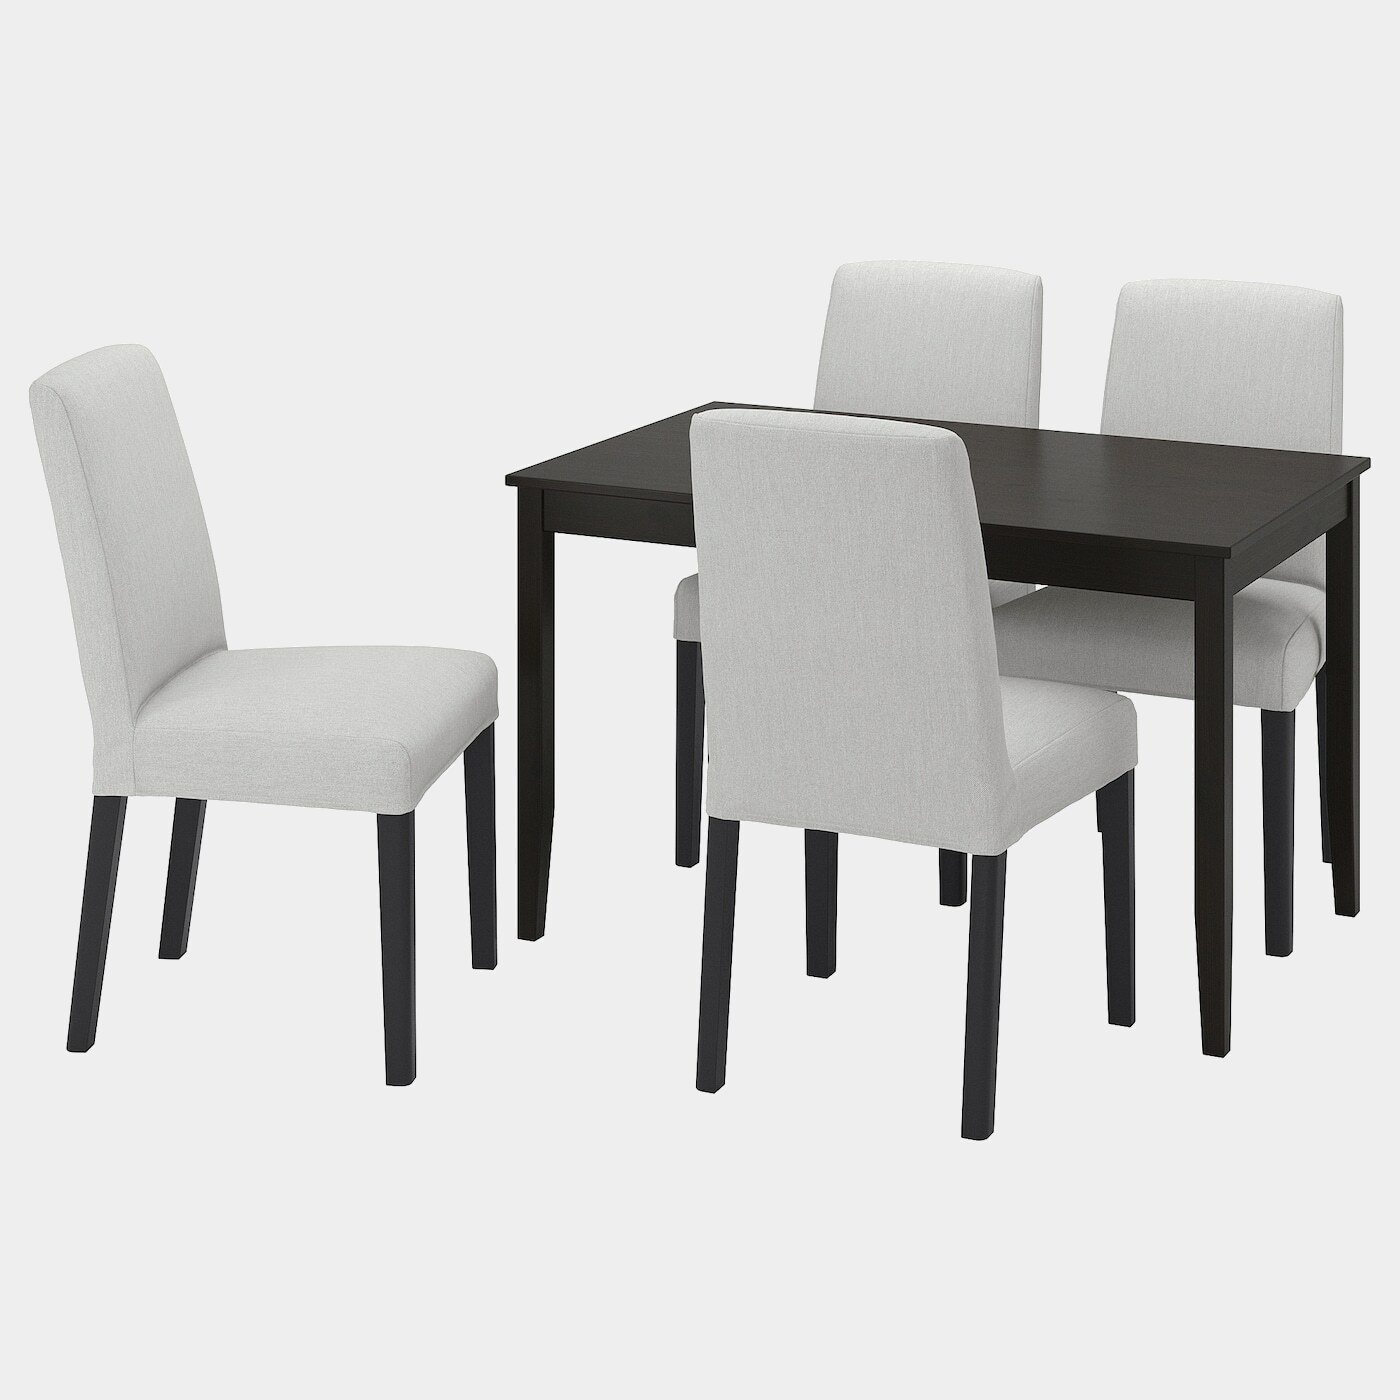 LERHAMN / BERGMUND Tisch und 4 Stühle  -  - Möbel Ideen für dein Zuhause von Home Trends. Möbel Trends von Social Media Influencer für dein Skandi Zuhause.